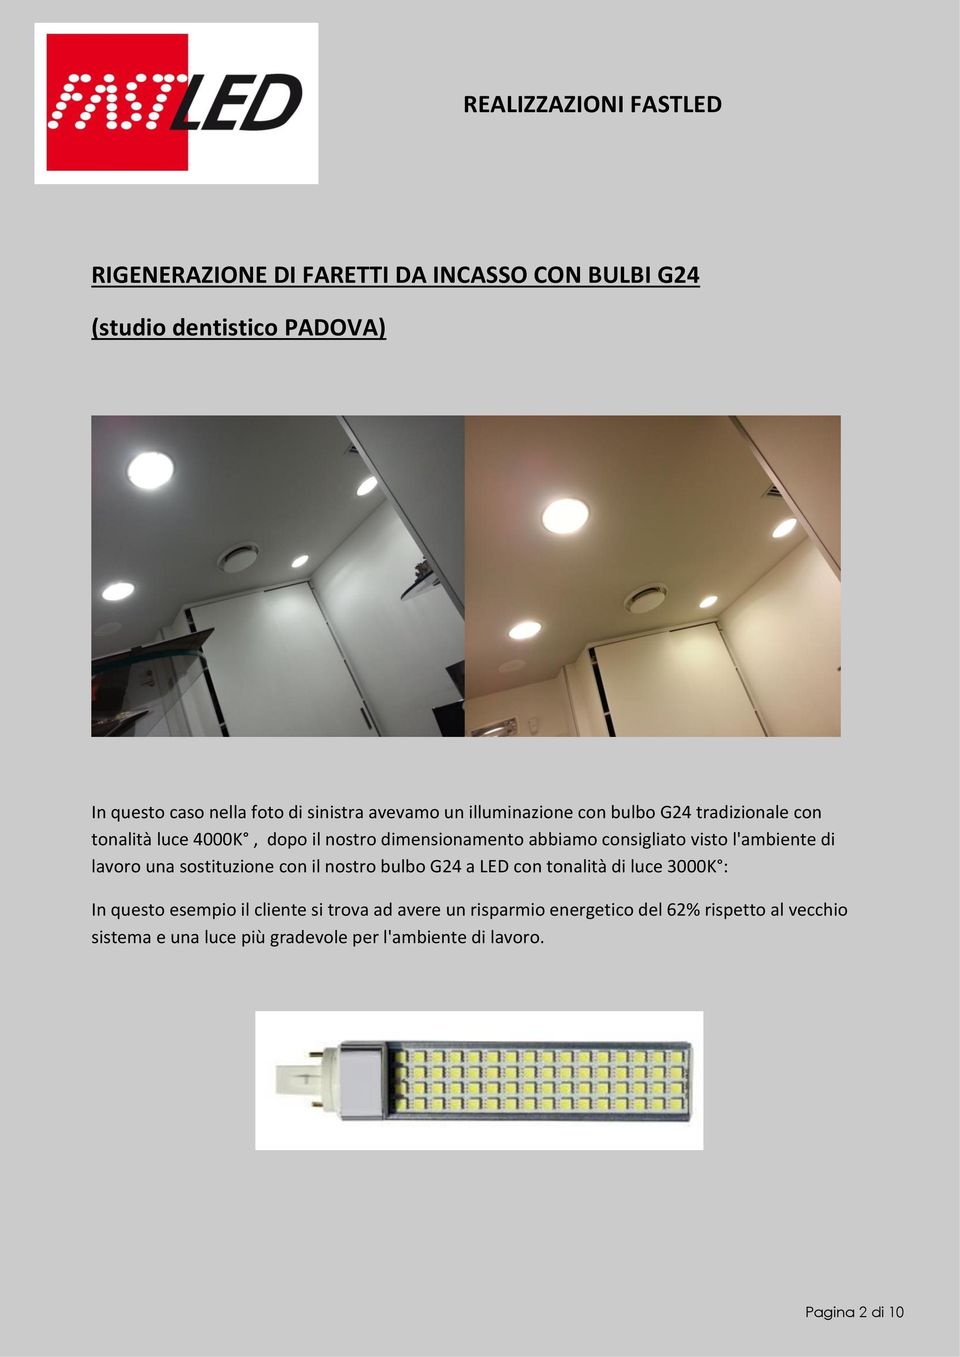 l'ambiente di lavoro una sostituzione con il nostro bulbo G24 a LED con tonalità di luce 3000K : In questo esempio il cliente si